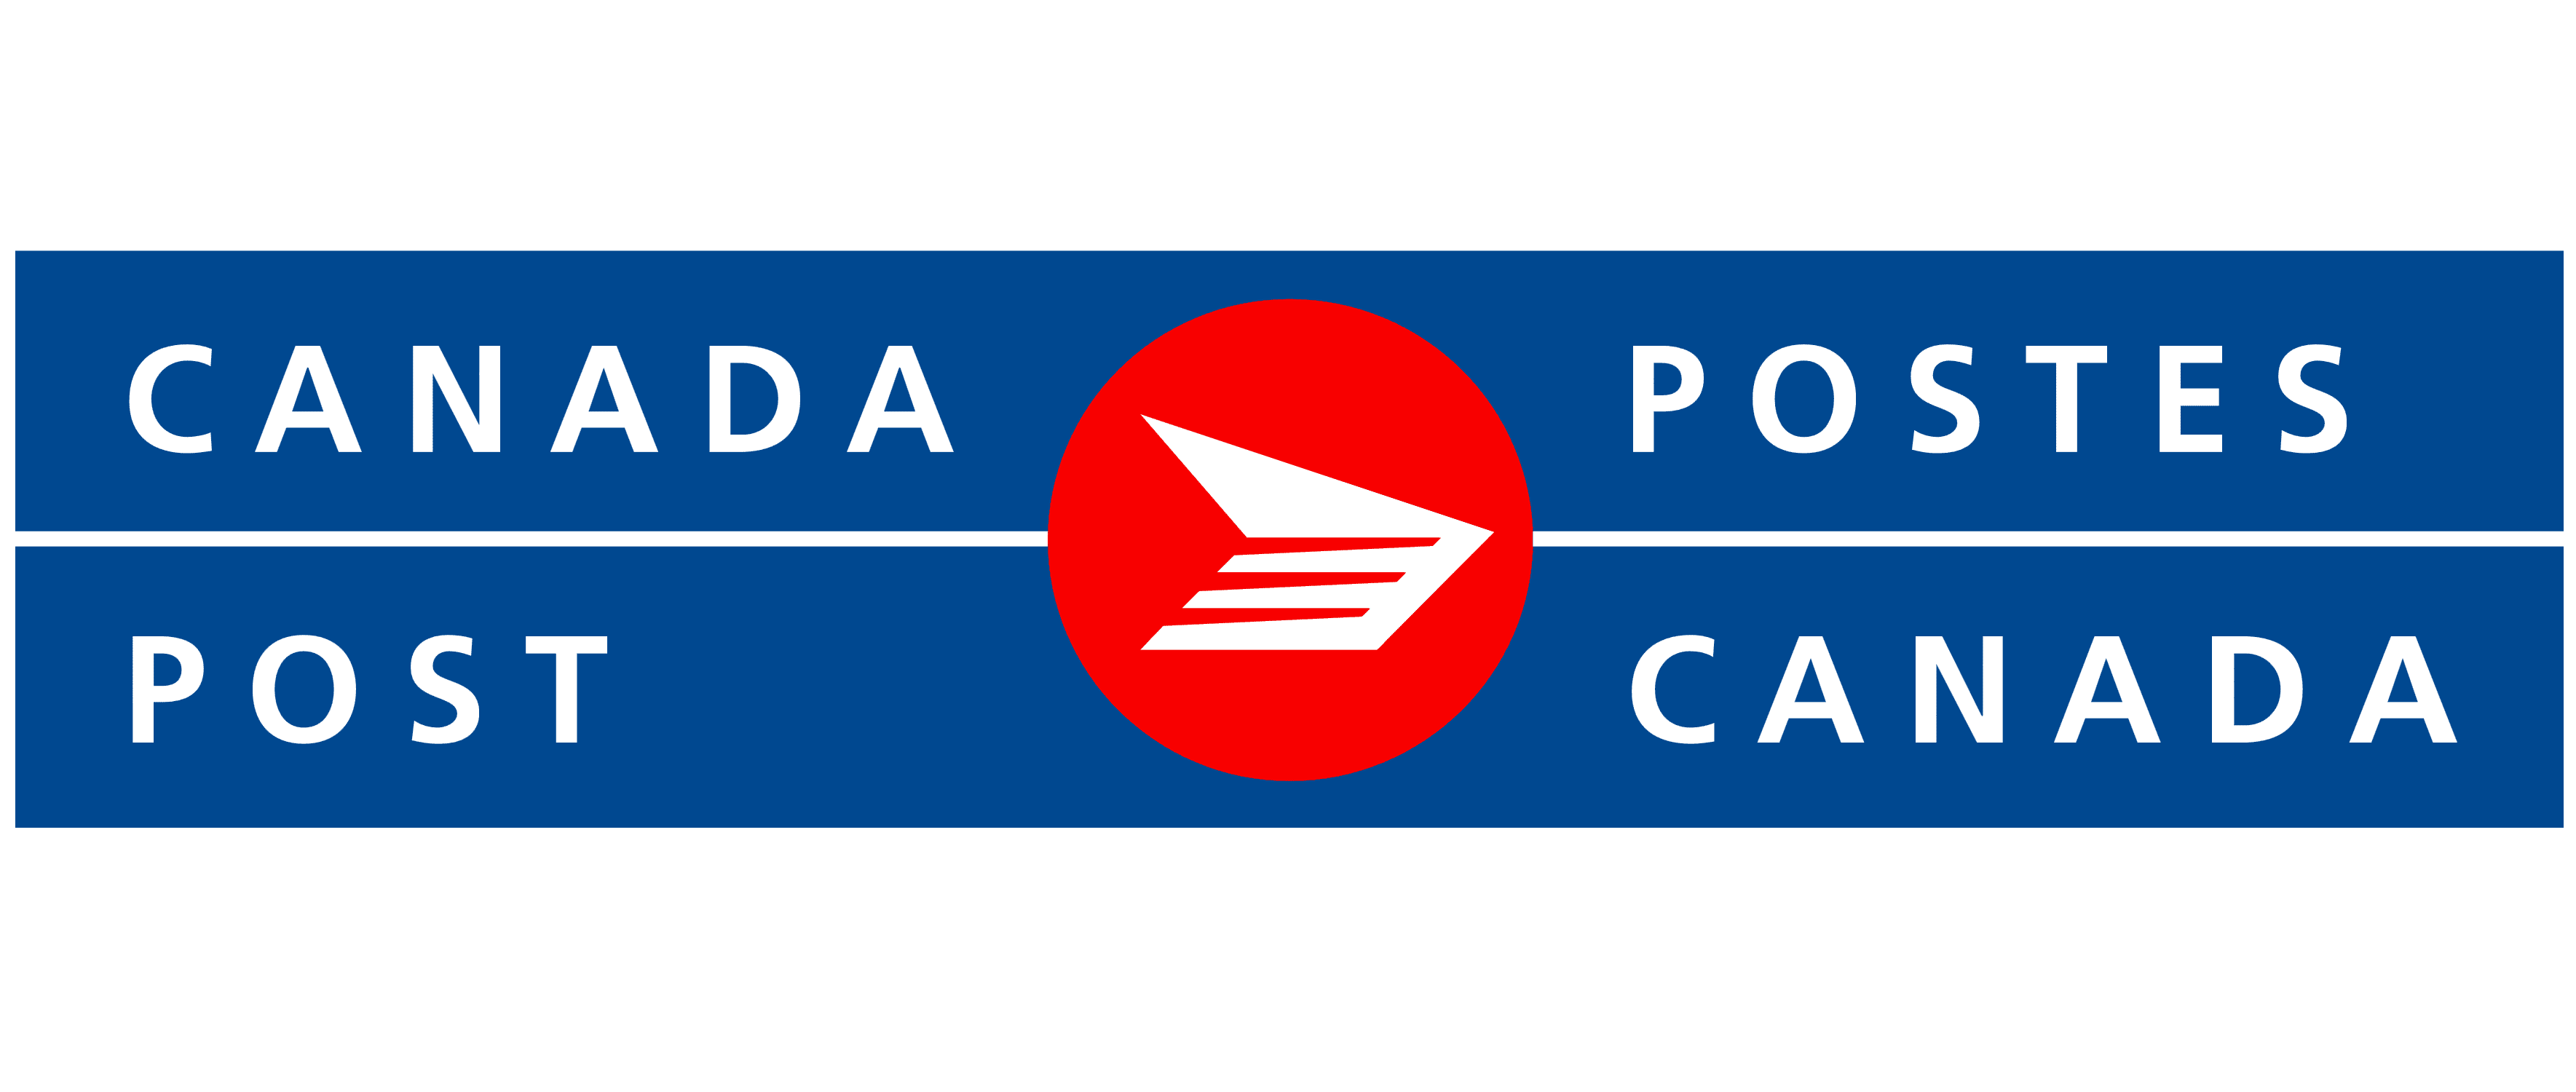 Canada Post (Inside Shoppers Drug Mart) logo